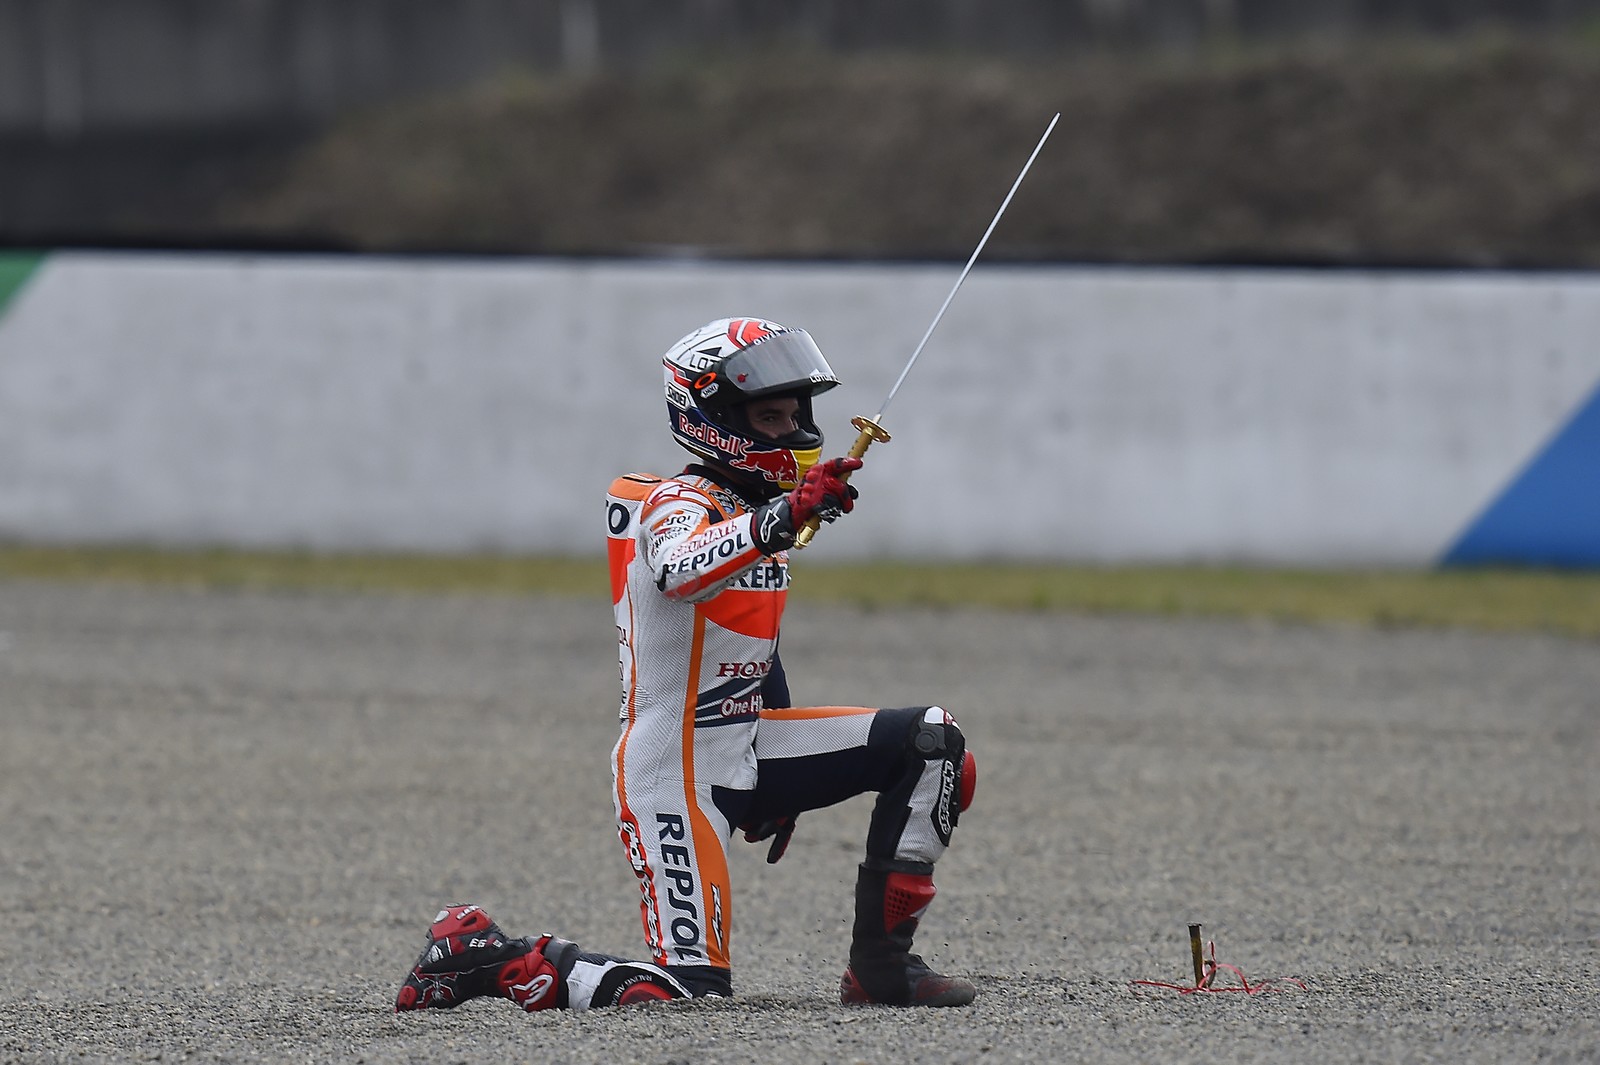 Marquez Campione MotoGP 2014